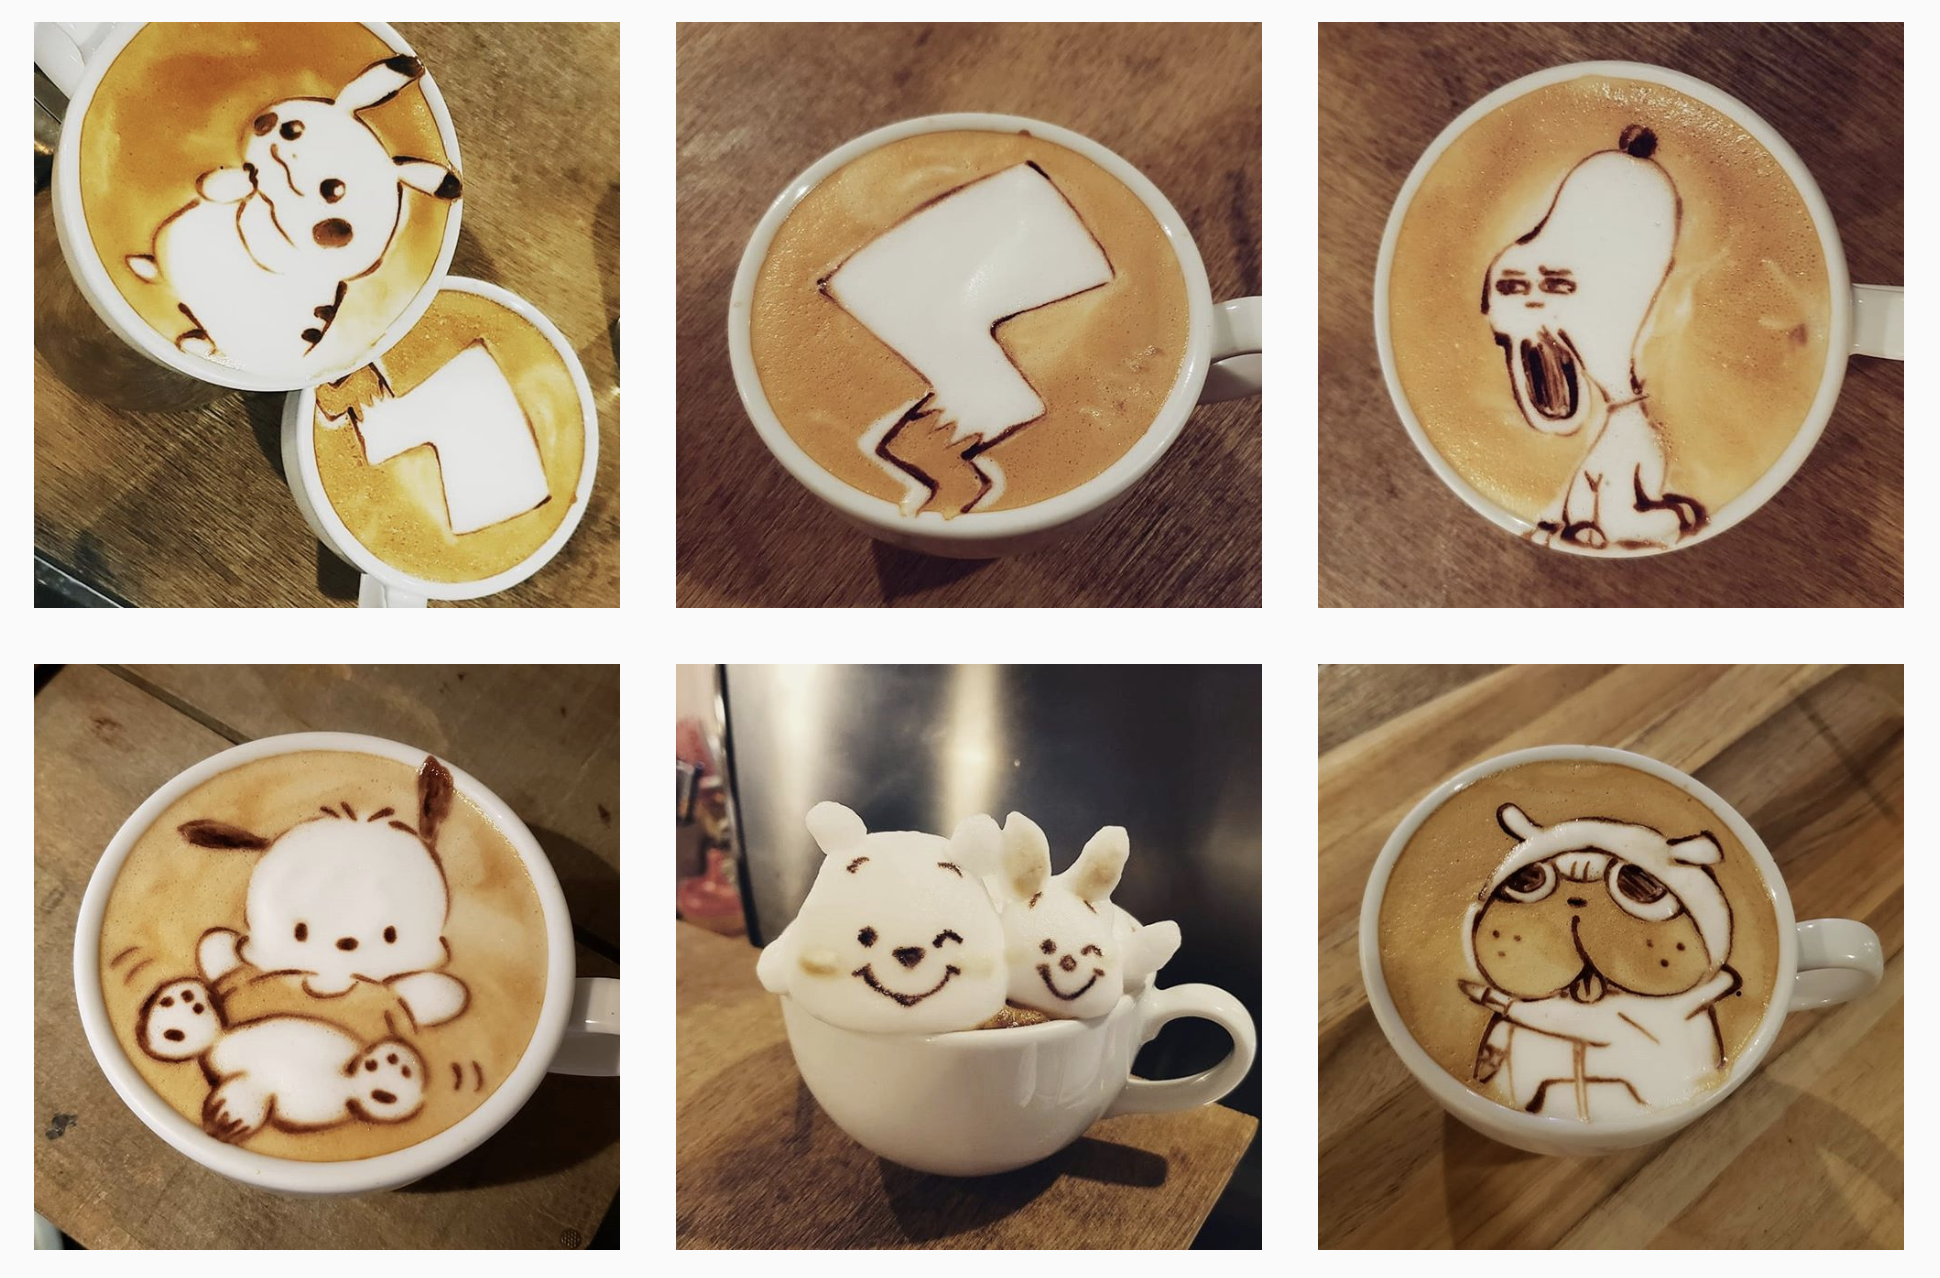 7 best cafés for latte art in Tokyo